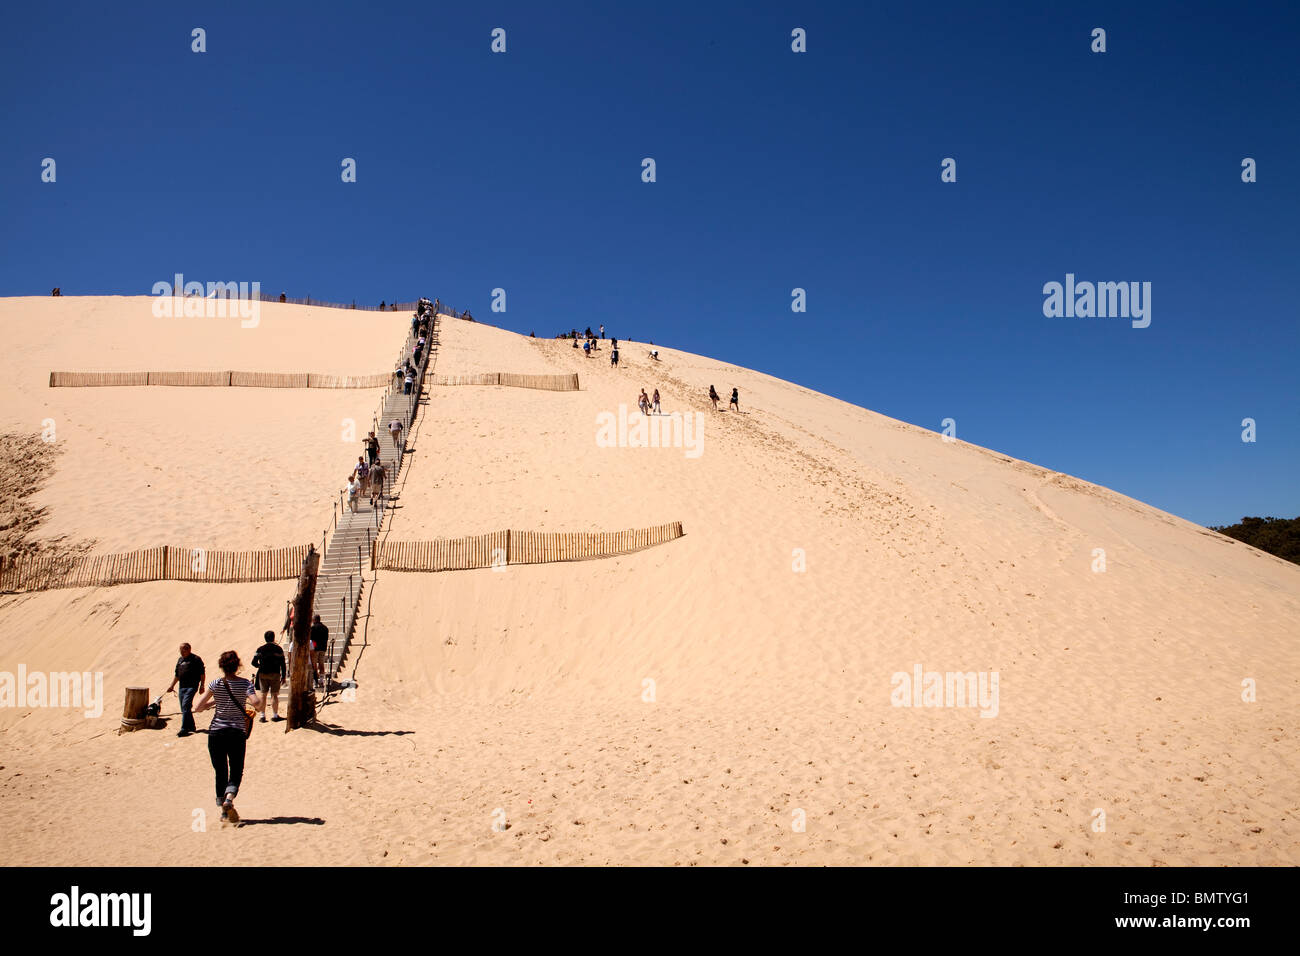 Les touristes l'ascension de la Dune du Pyla, Arcachon, France Banque D'Images